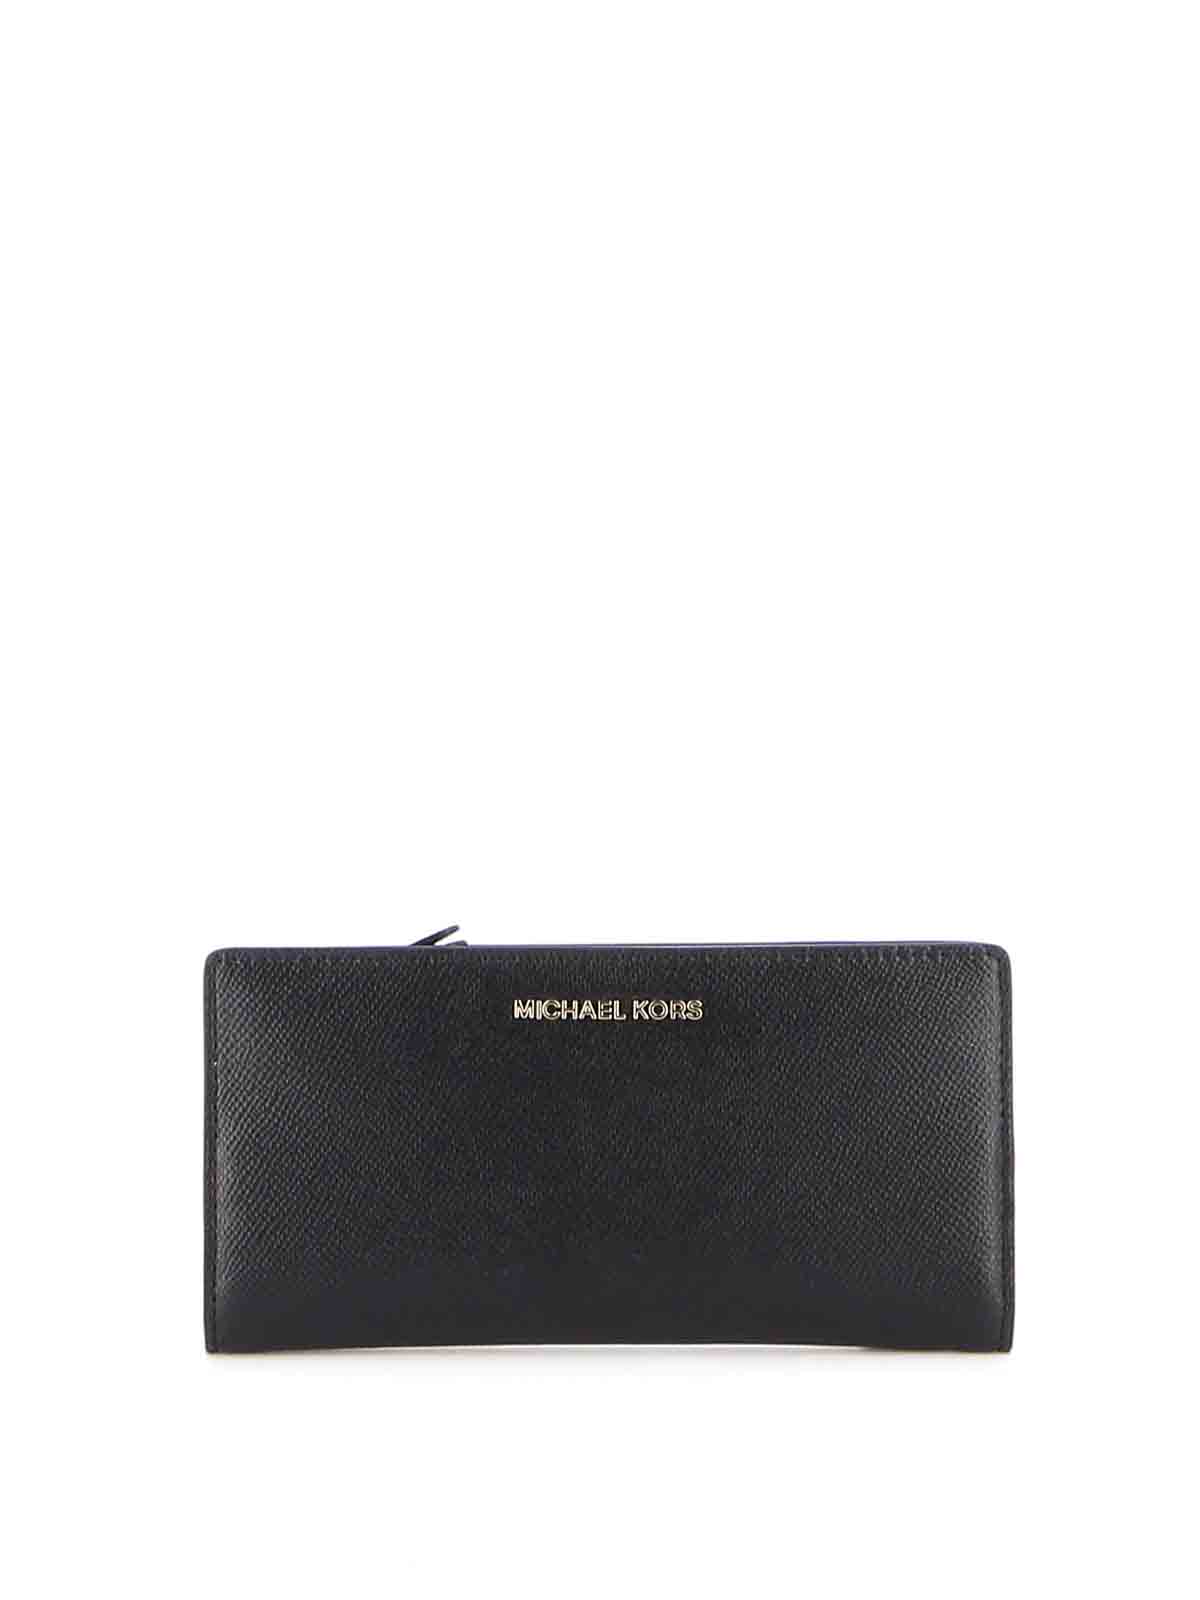 Wallets & purses Michael Kors - Jet Set textured eco leather wallet -  34F9GJ6D3L001